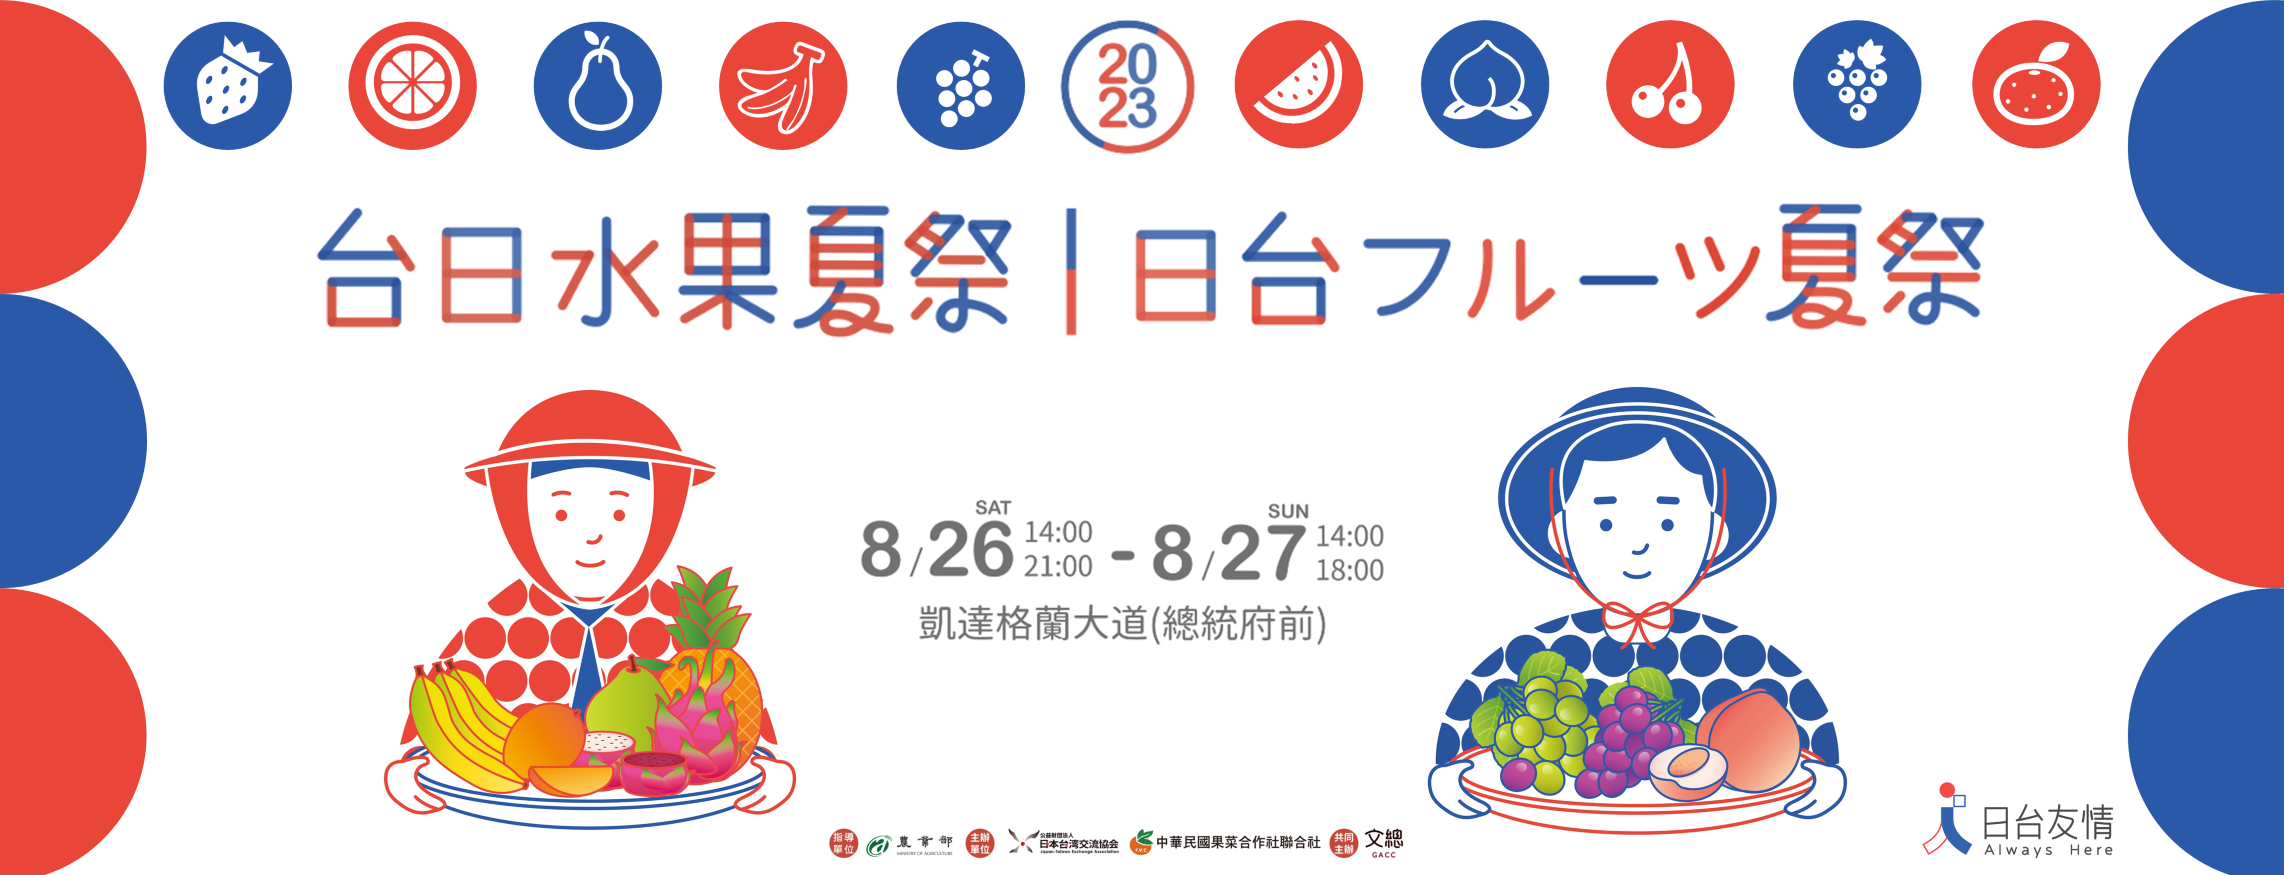 台日水果夏祭/日台フルーツ夏祭